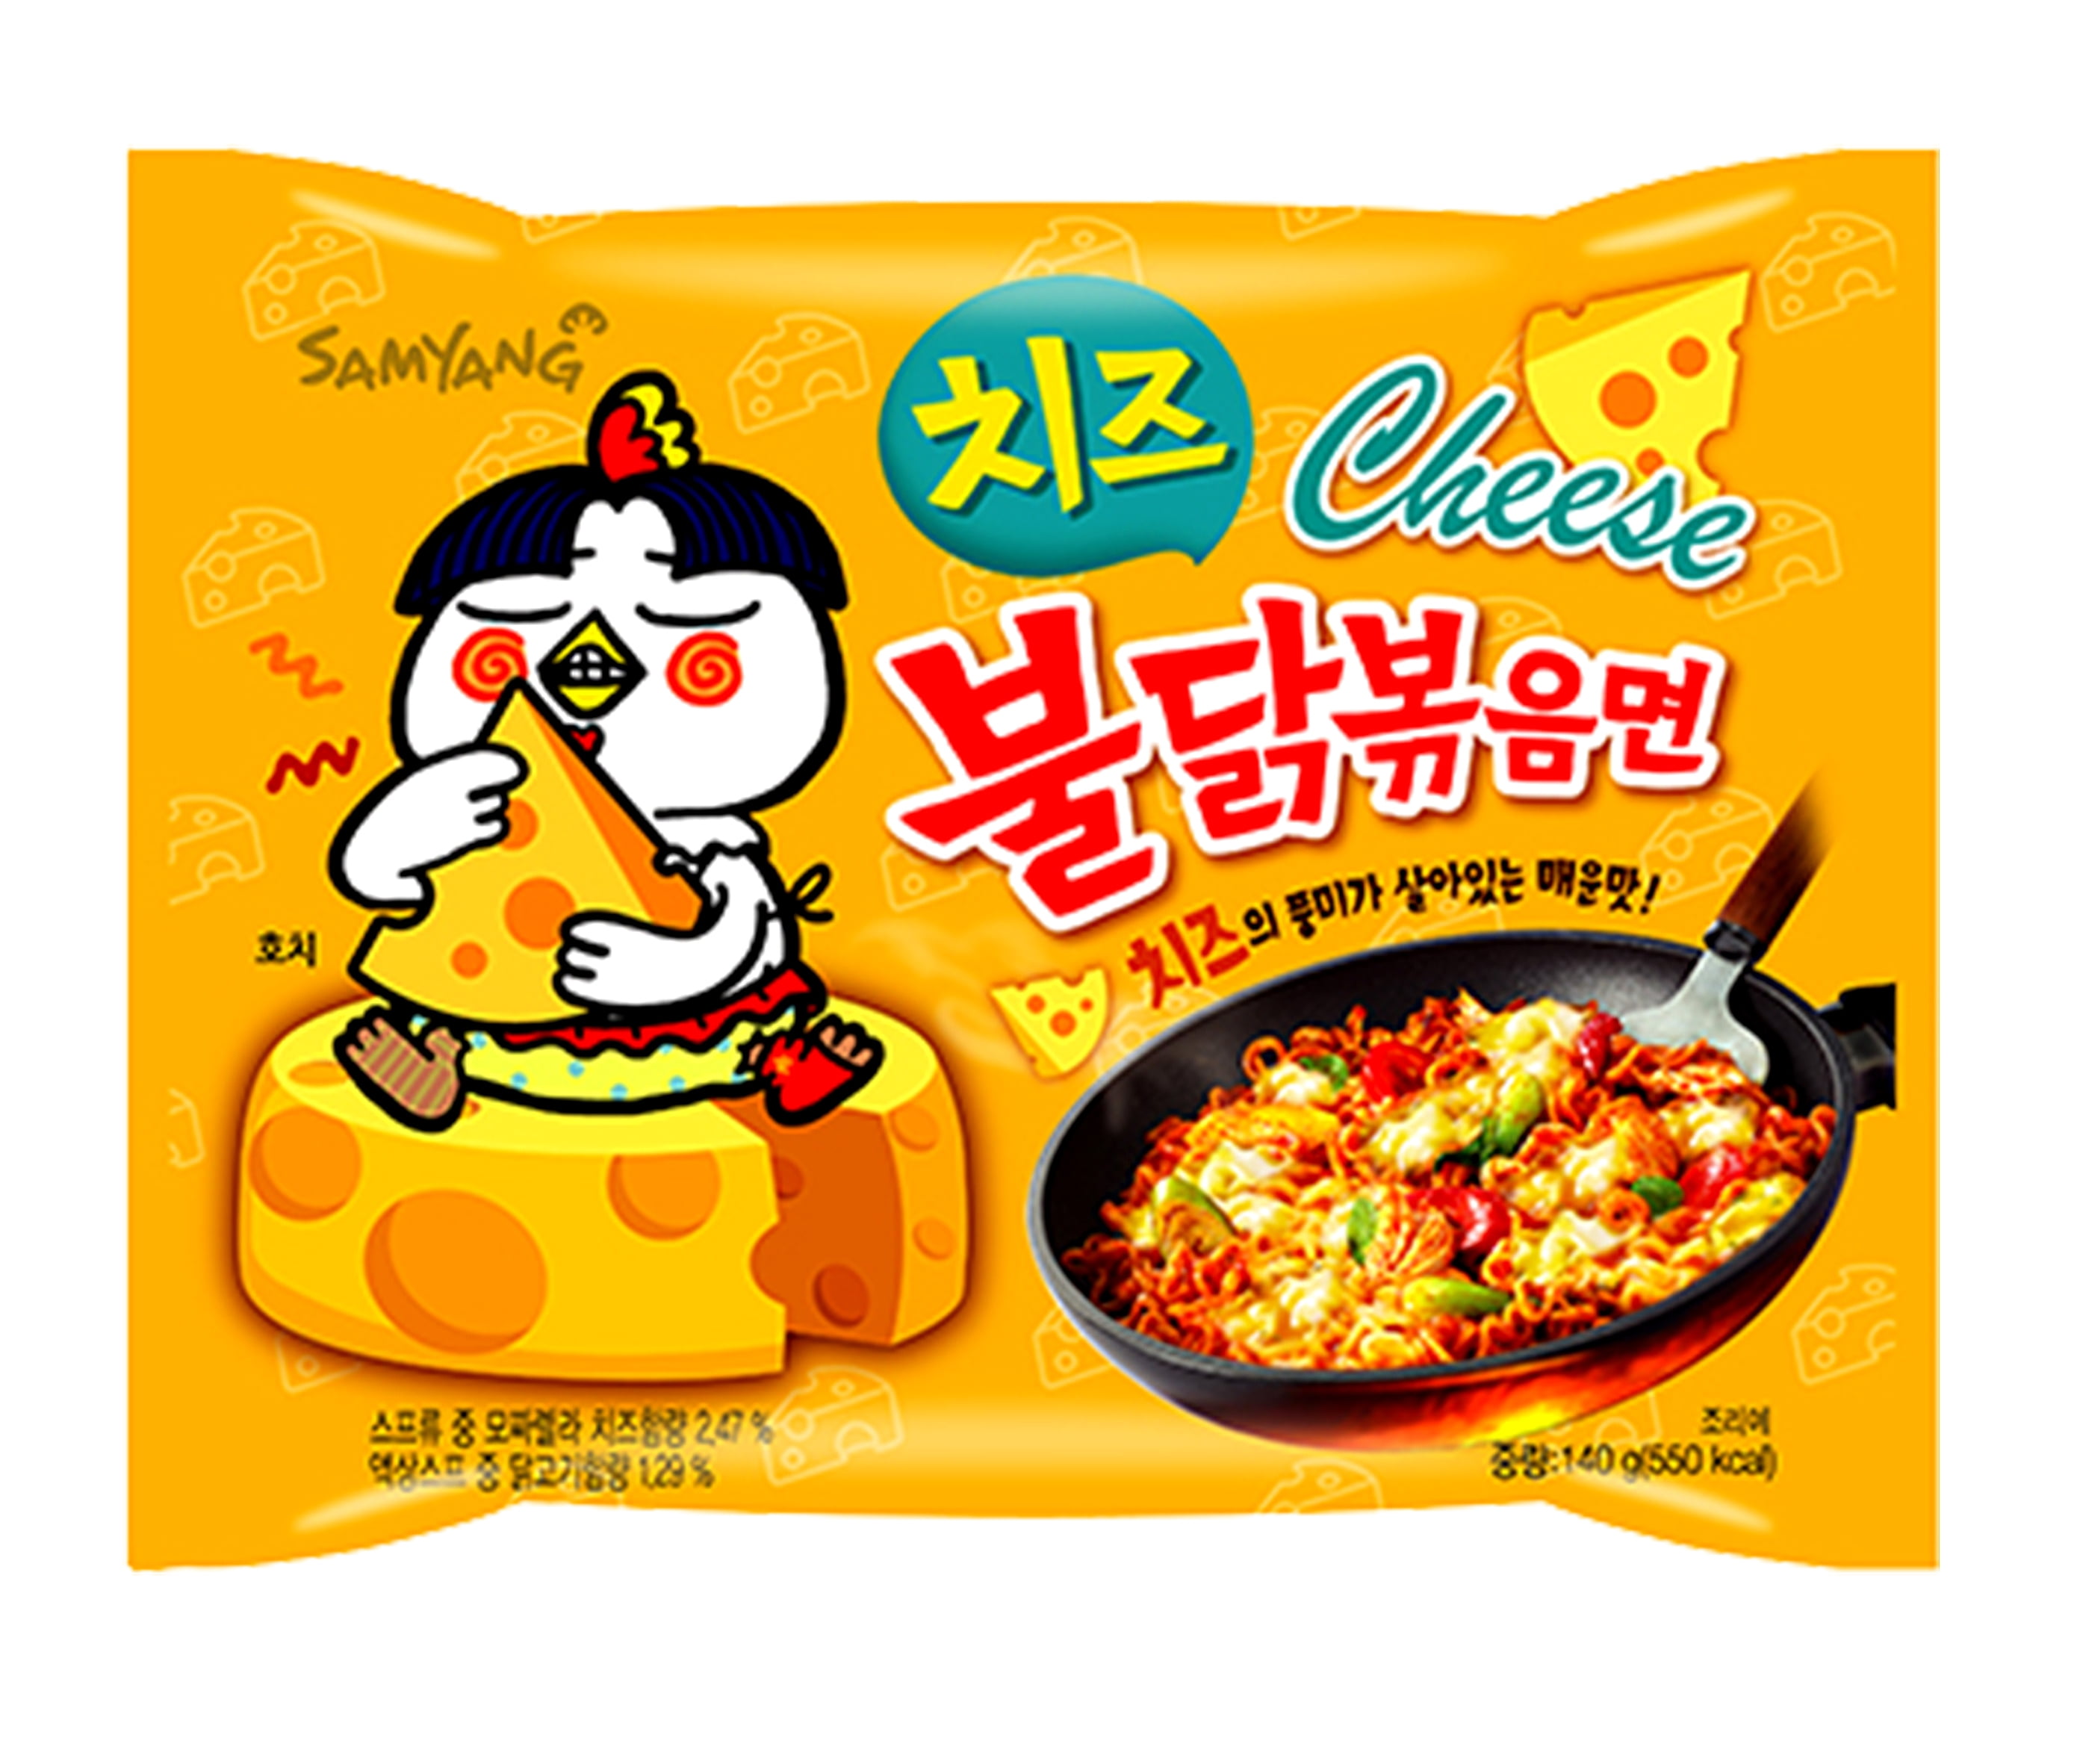 Samyang Buldak Artificial Spicy Chicken Flavor Ramen Quattro Cheese 3. –  Anytime Basket